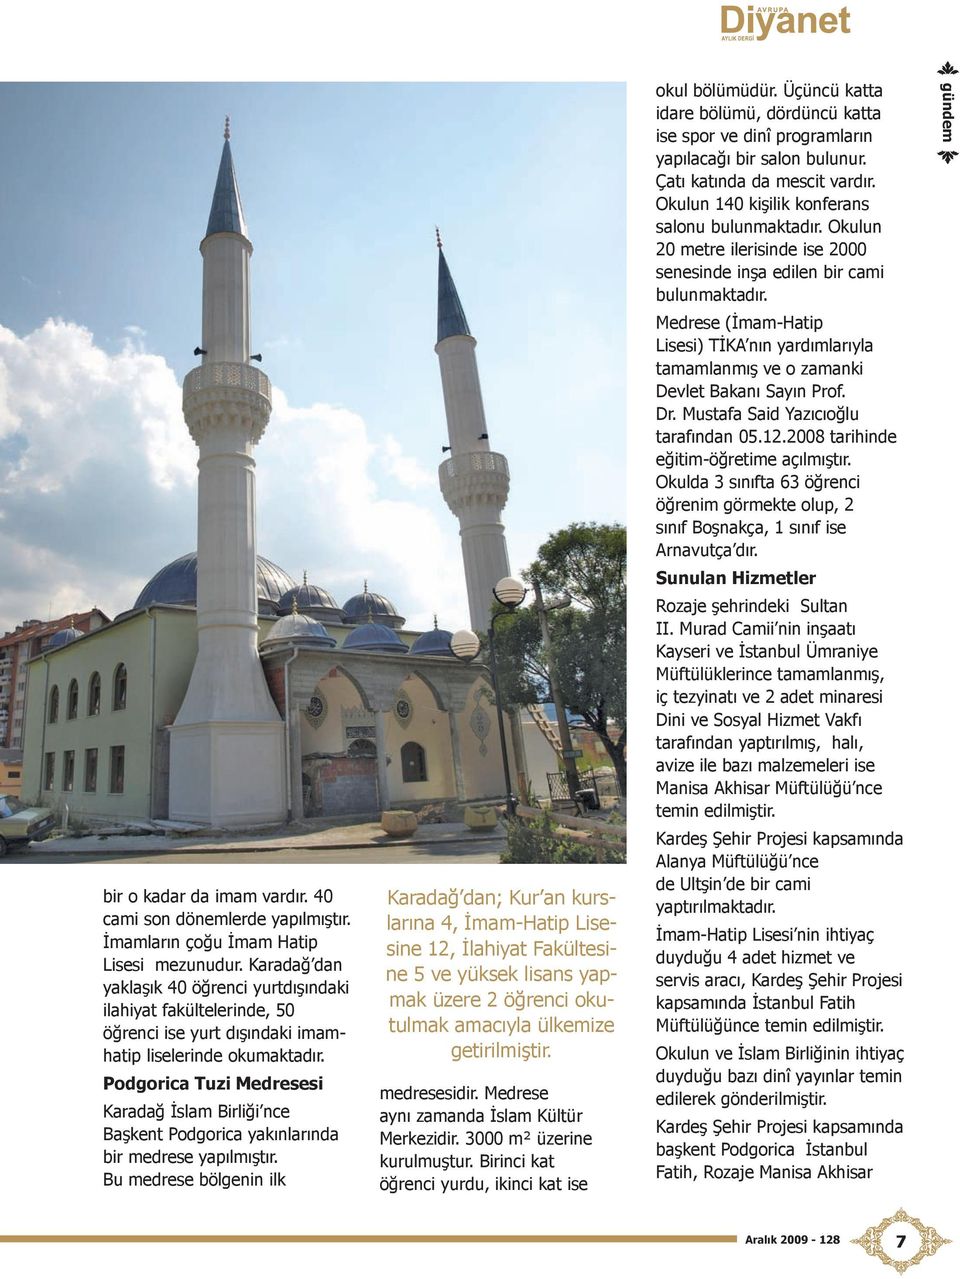 Podgorica Tuzi Medresesi Karadağ İslam Birliği nce Başkent Podgorica yakınlarında bir medrese yapılmıştır.